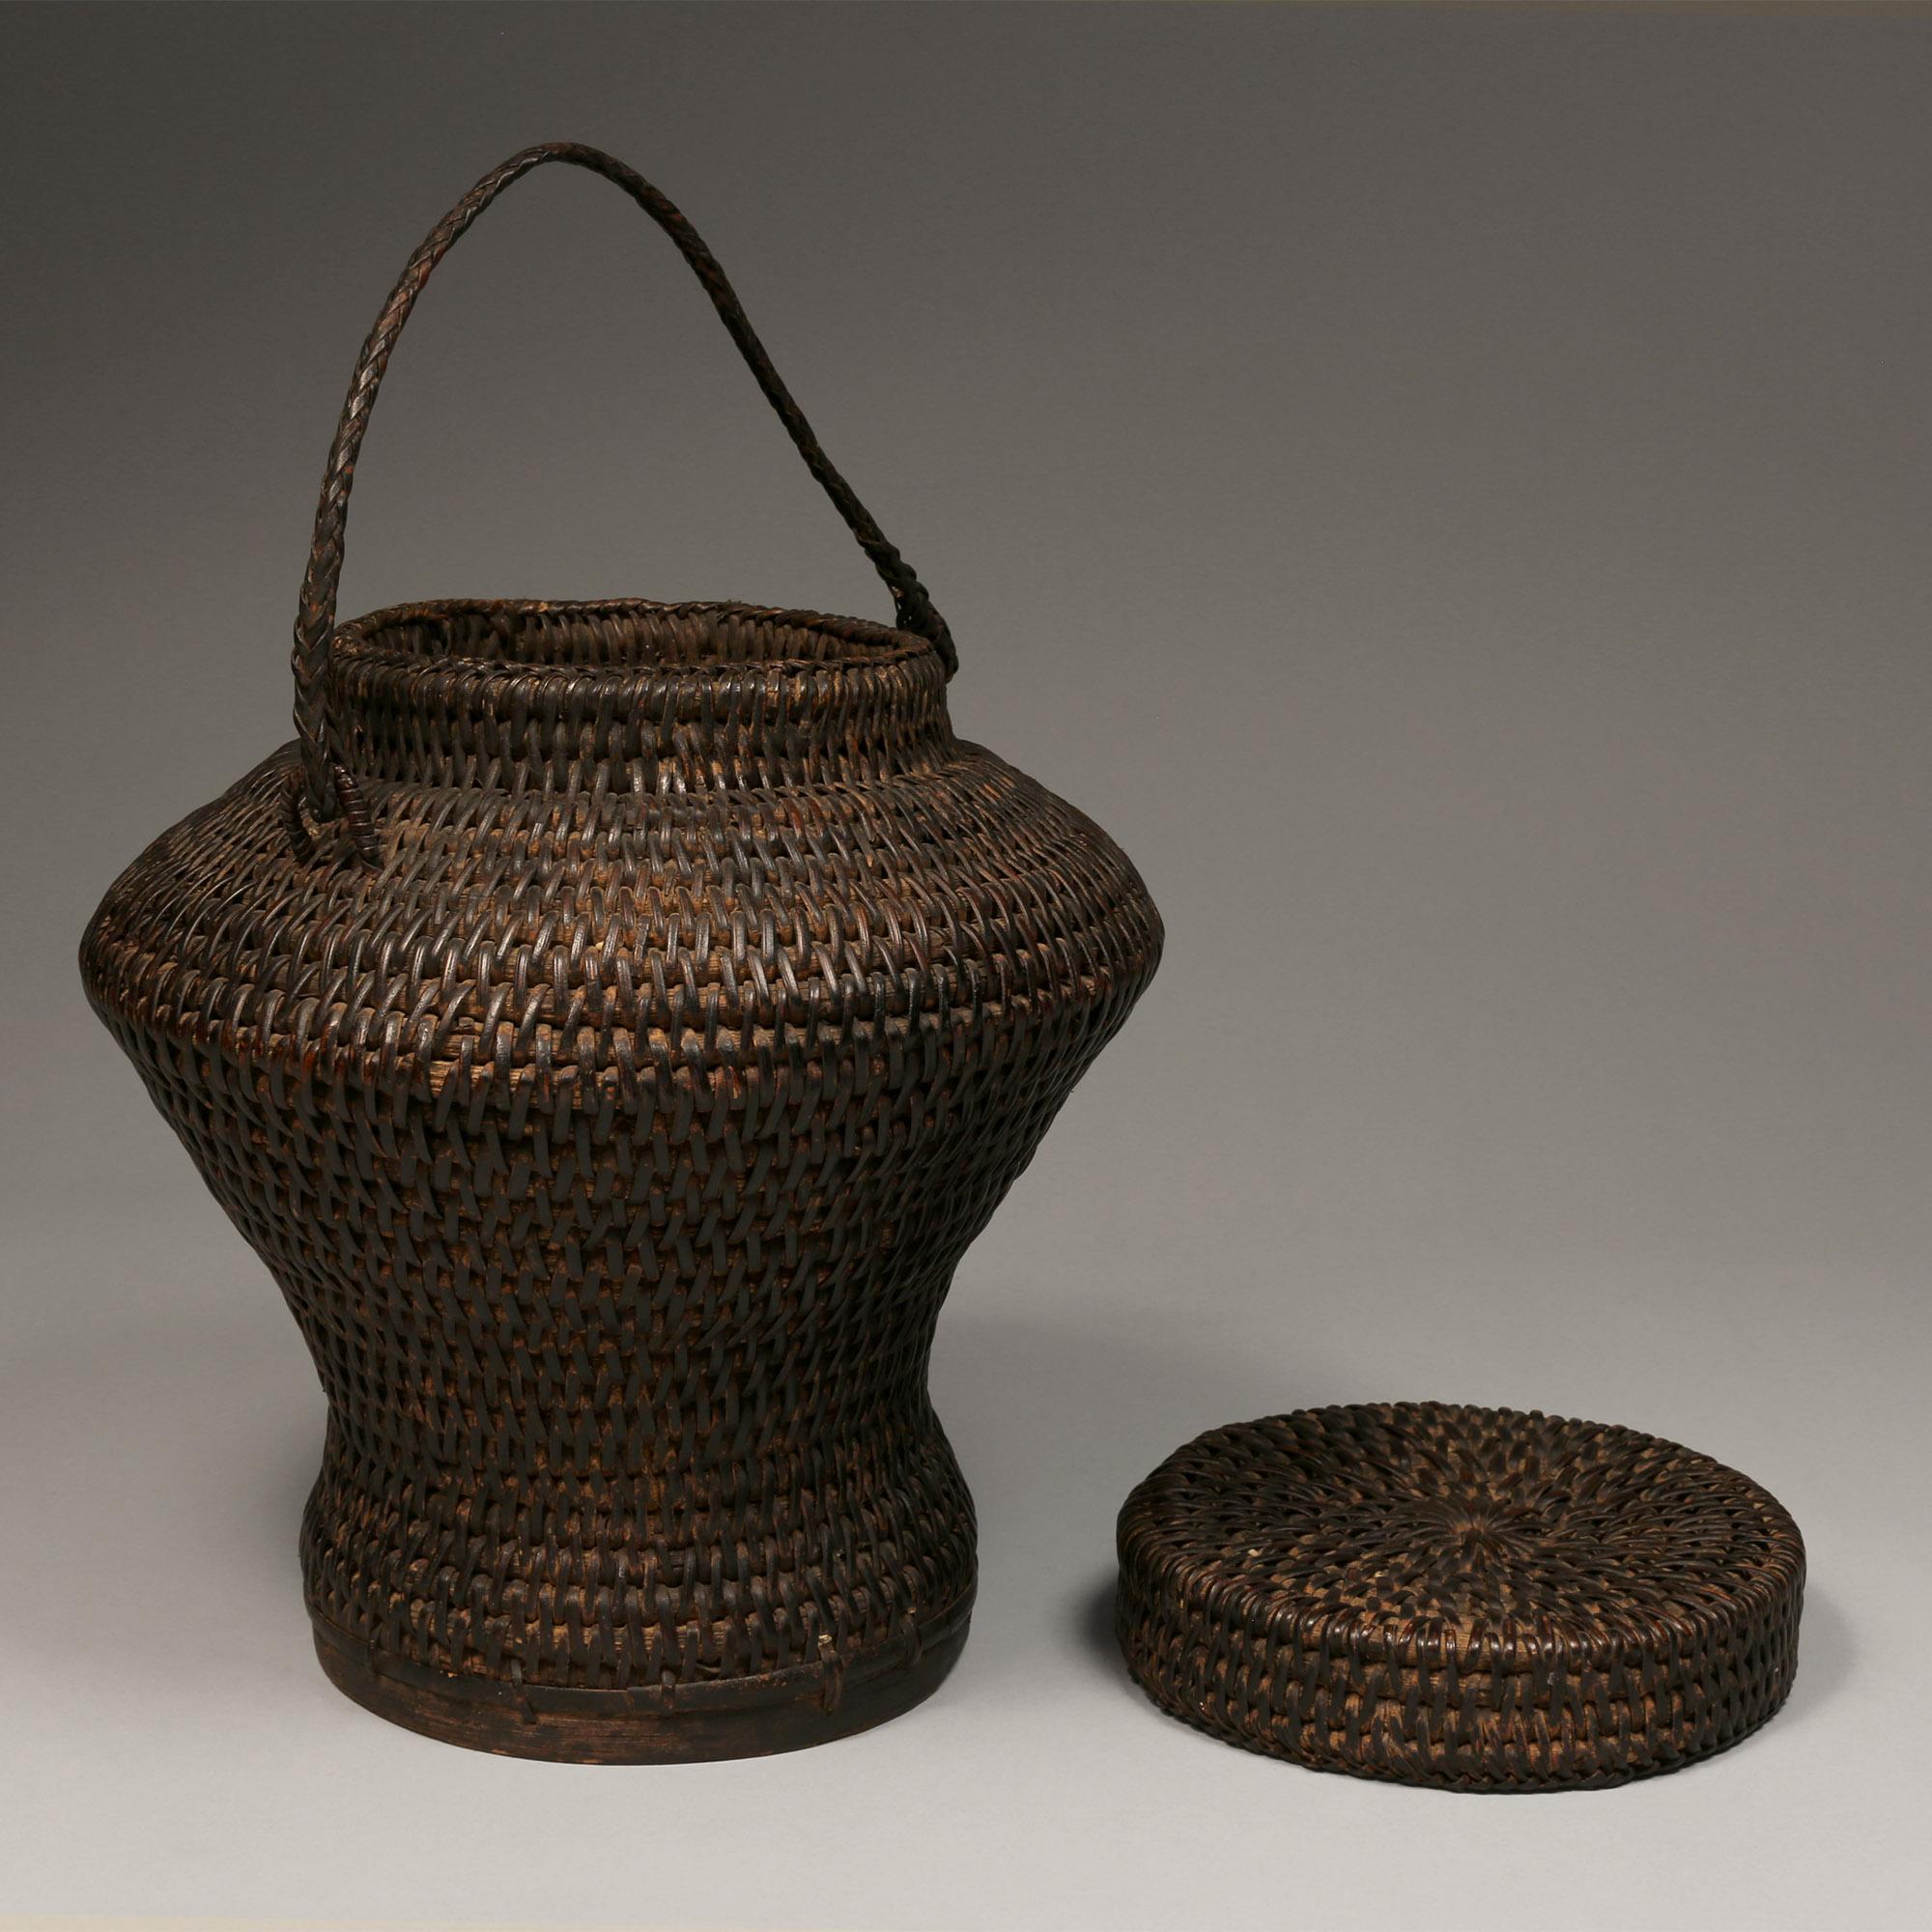 Ancien panier de stockage du riz en forme de jarre (Ulbung), Philippines, début ou milieu du 20e siècle
Ce panier provient d'Ifugao, aux Philippines. Fabriqué à la main à partir d'un tissage en spirale de bambou et de rotin.

Condit : Le panier